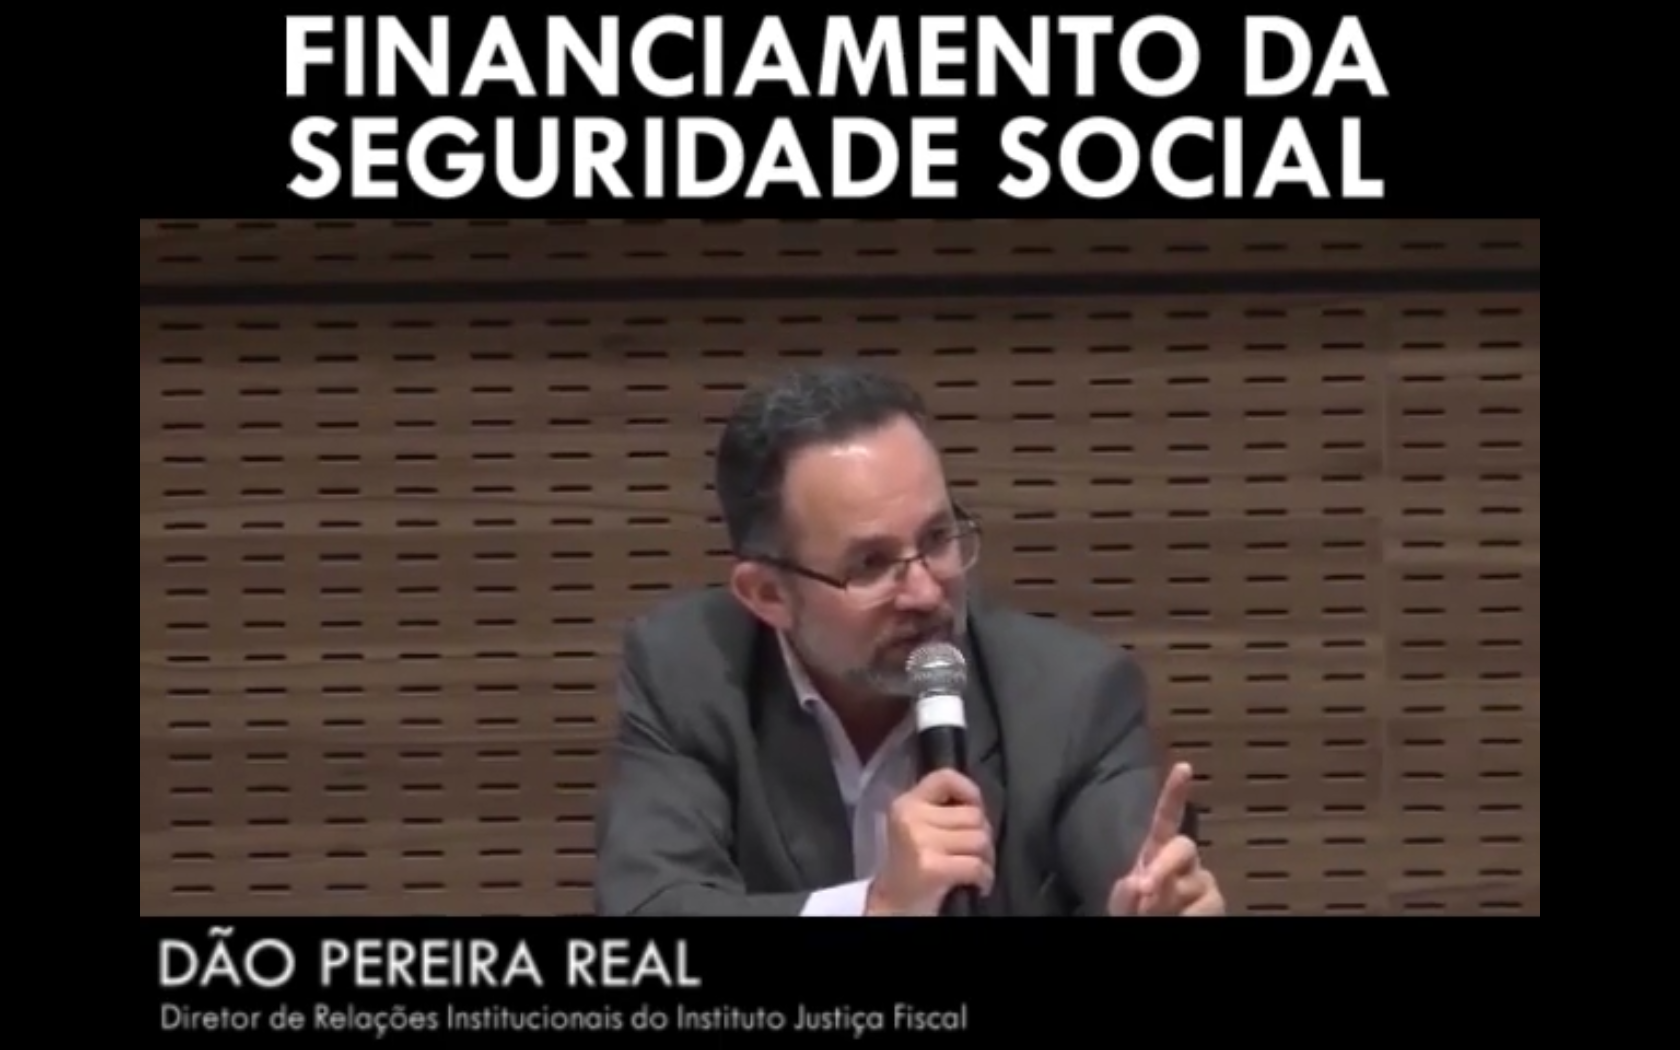 Financiamento da Seguridade Social - Dão Pereira Real 